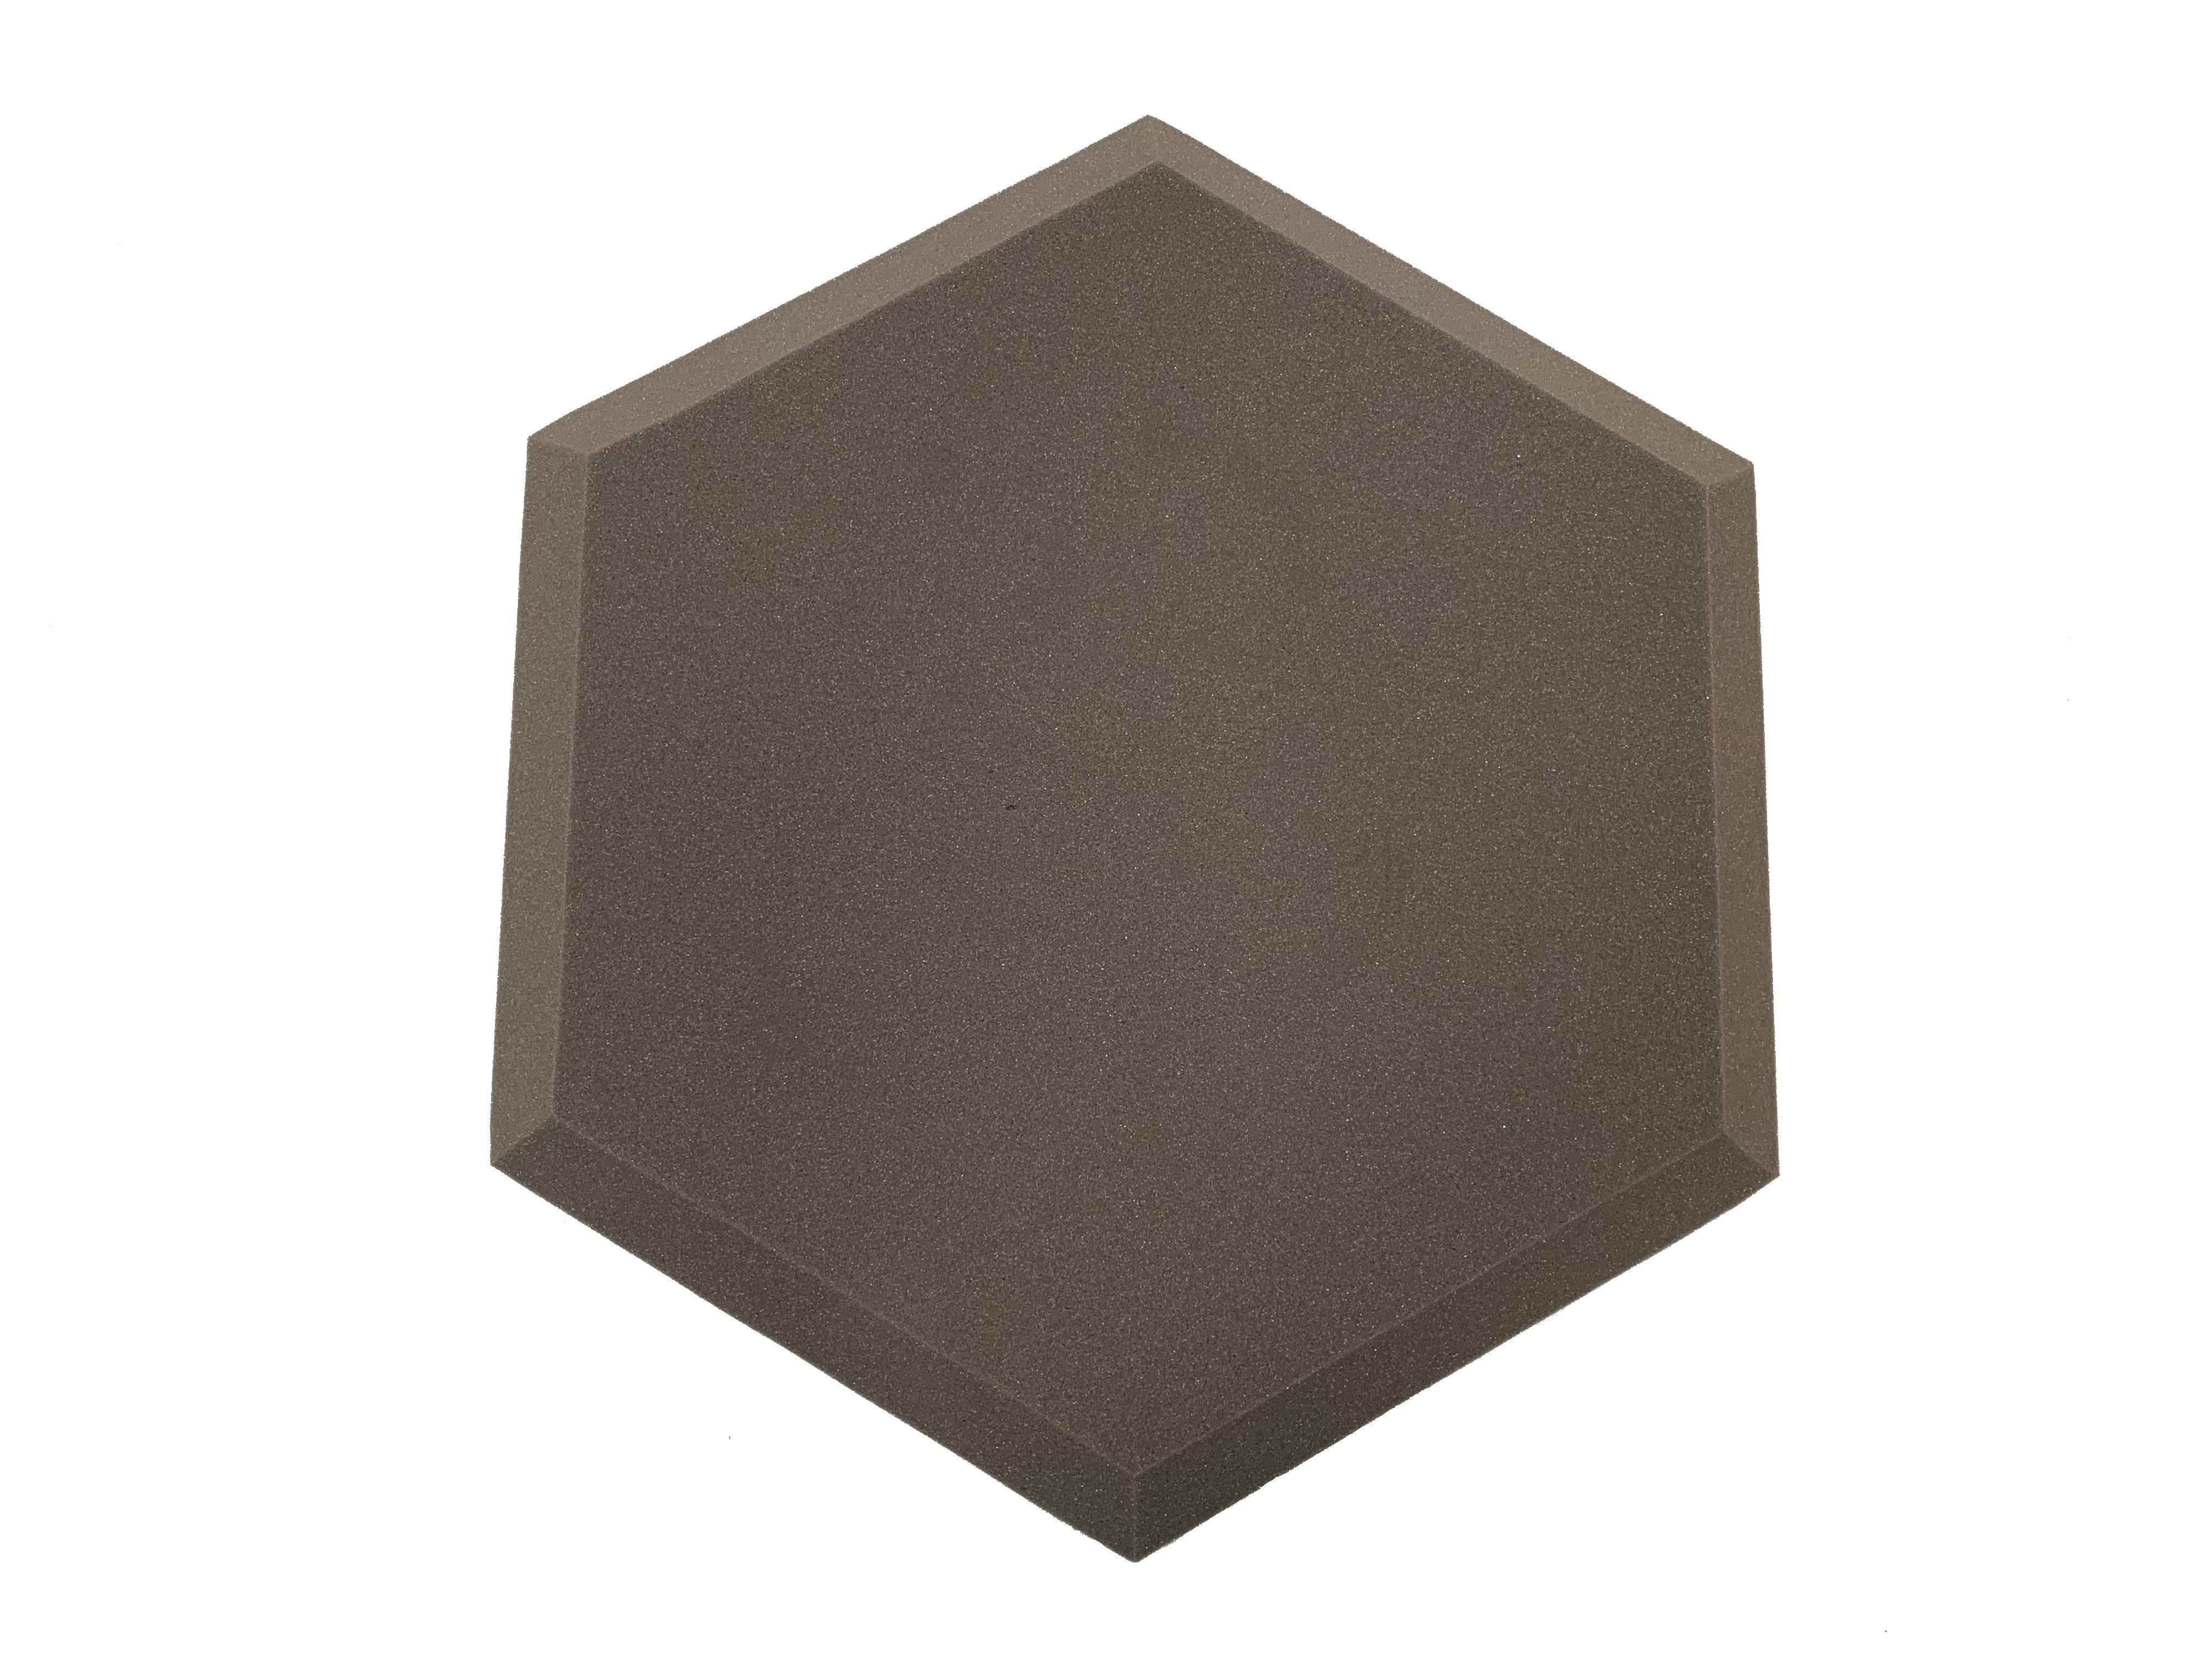 Hexatile3 Acoustic Studio Foam Tile Pack - Advanced Acoustics